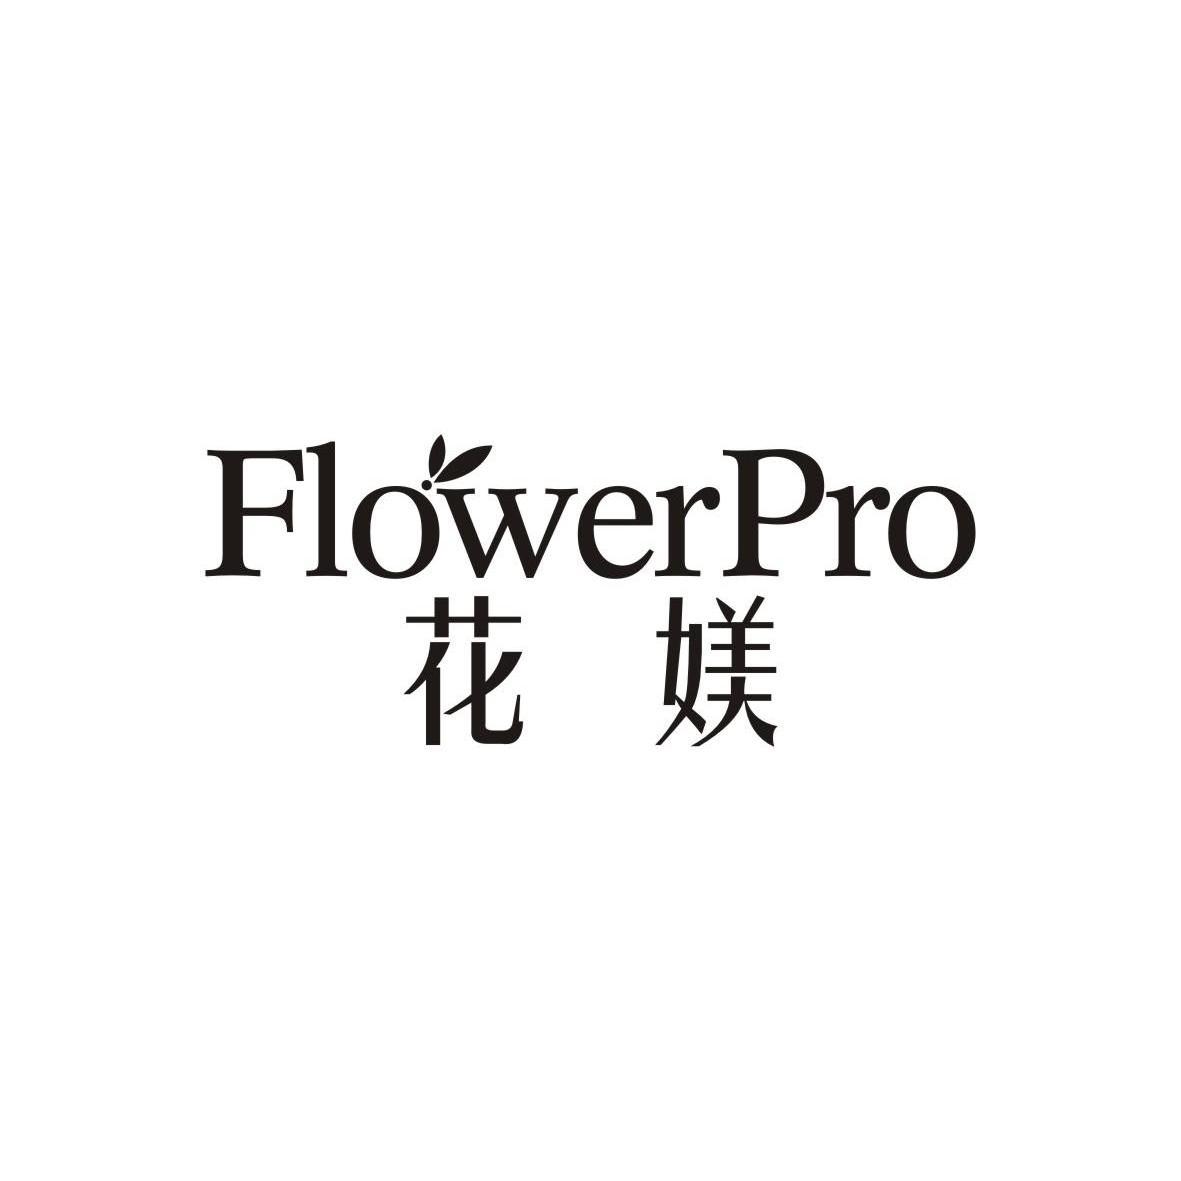 花媄flowerpro